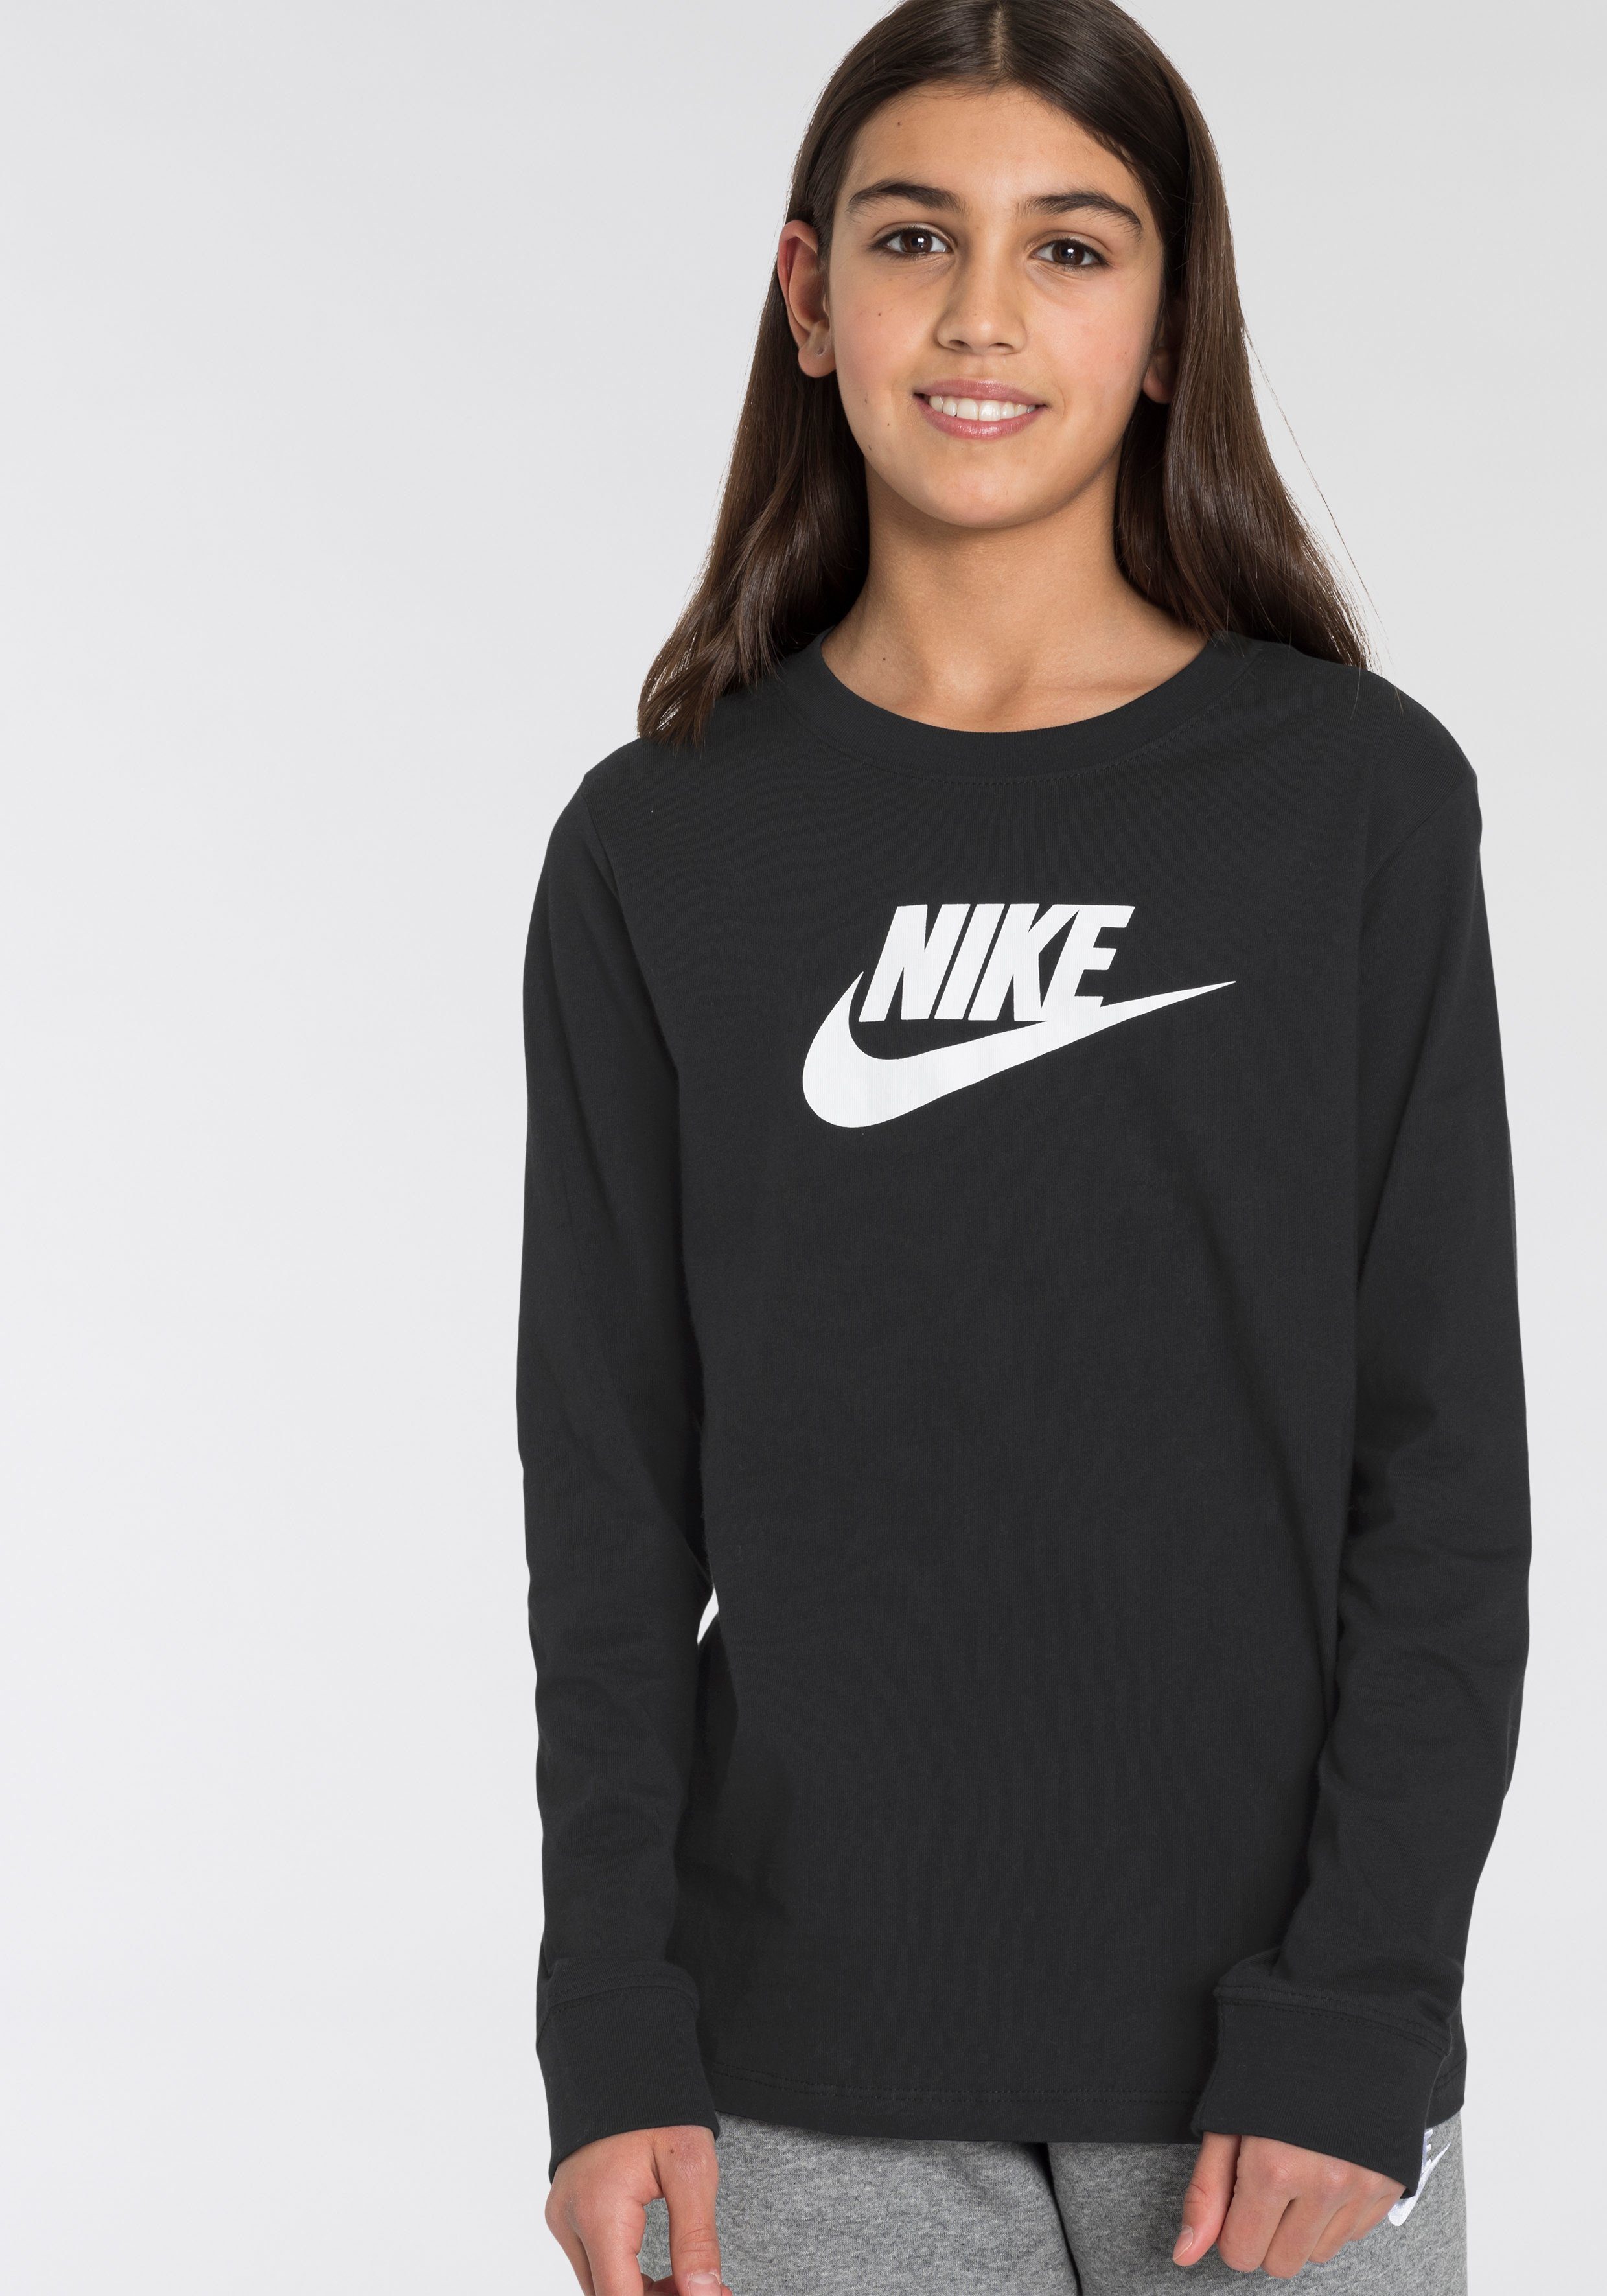 Nike Shirts Mädchen online kaufen | OTTO